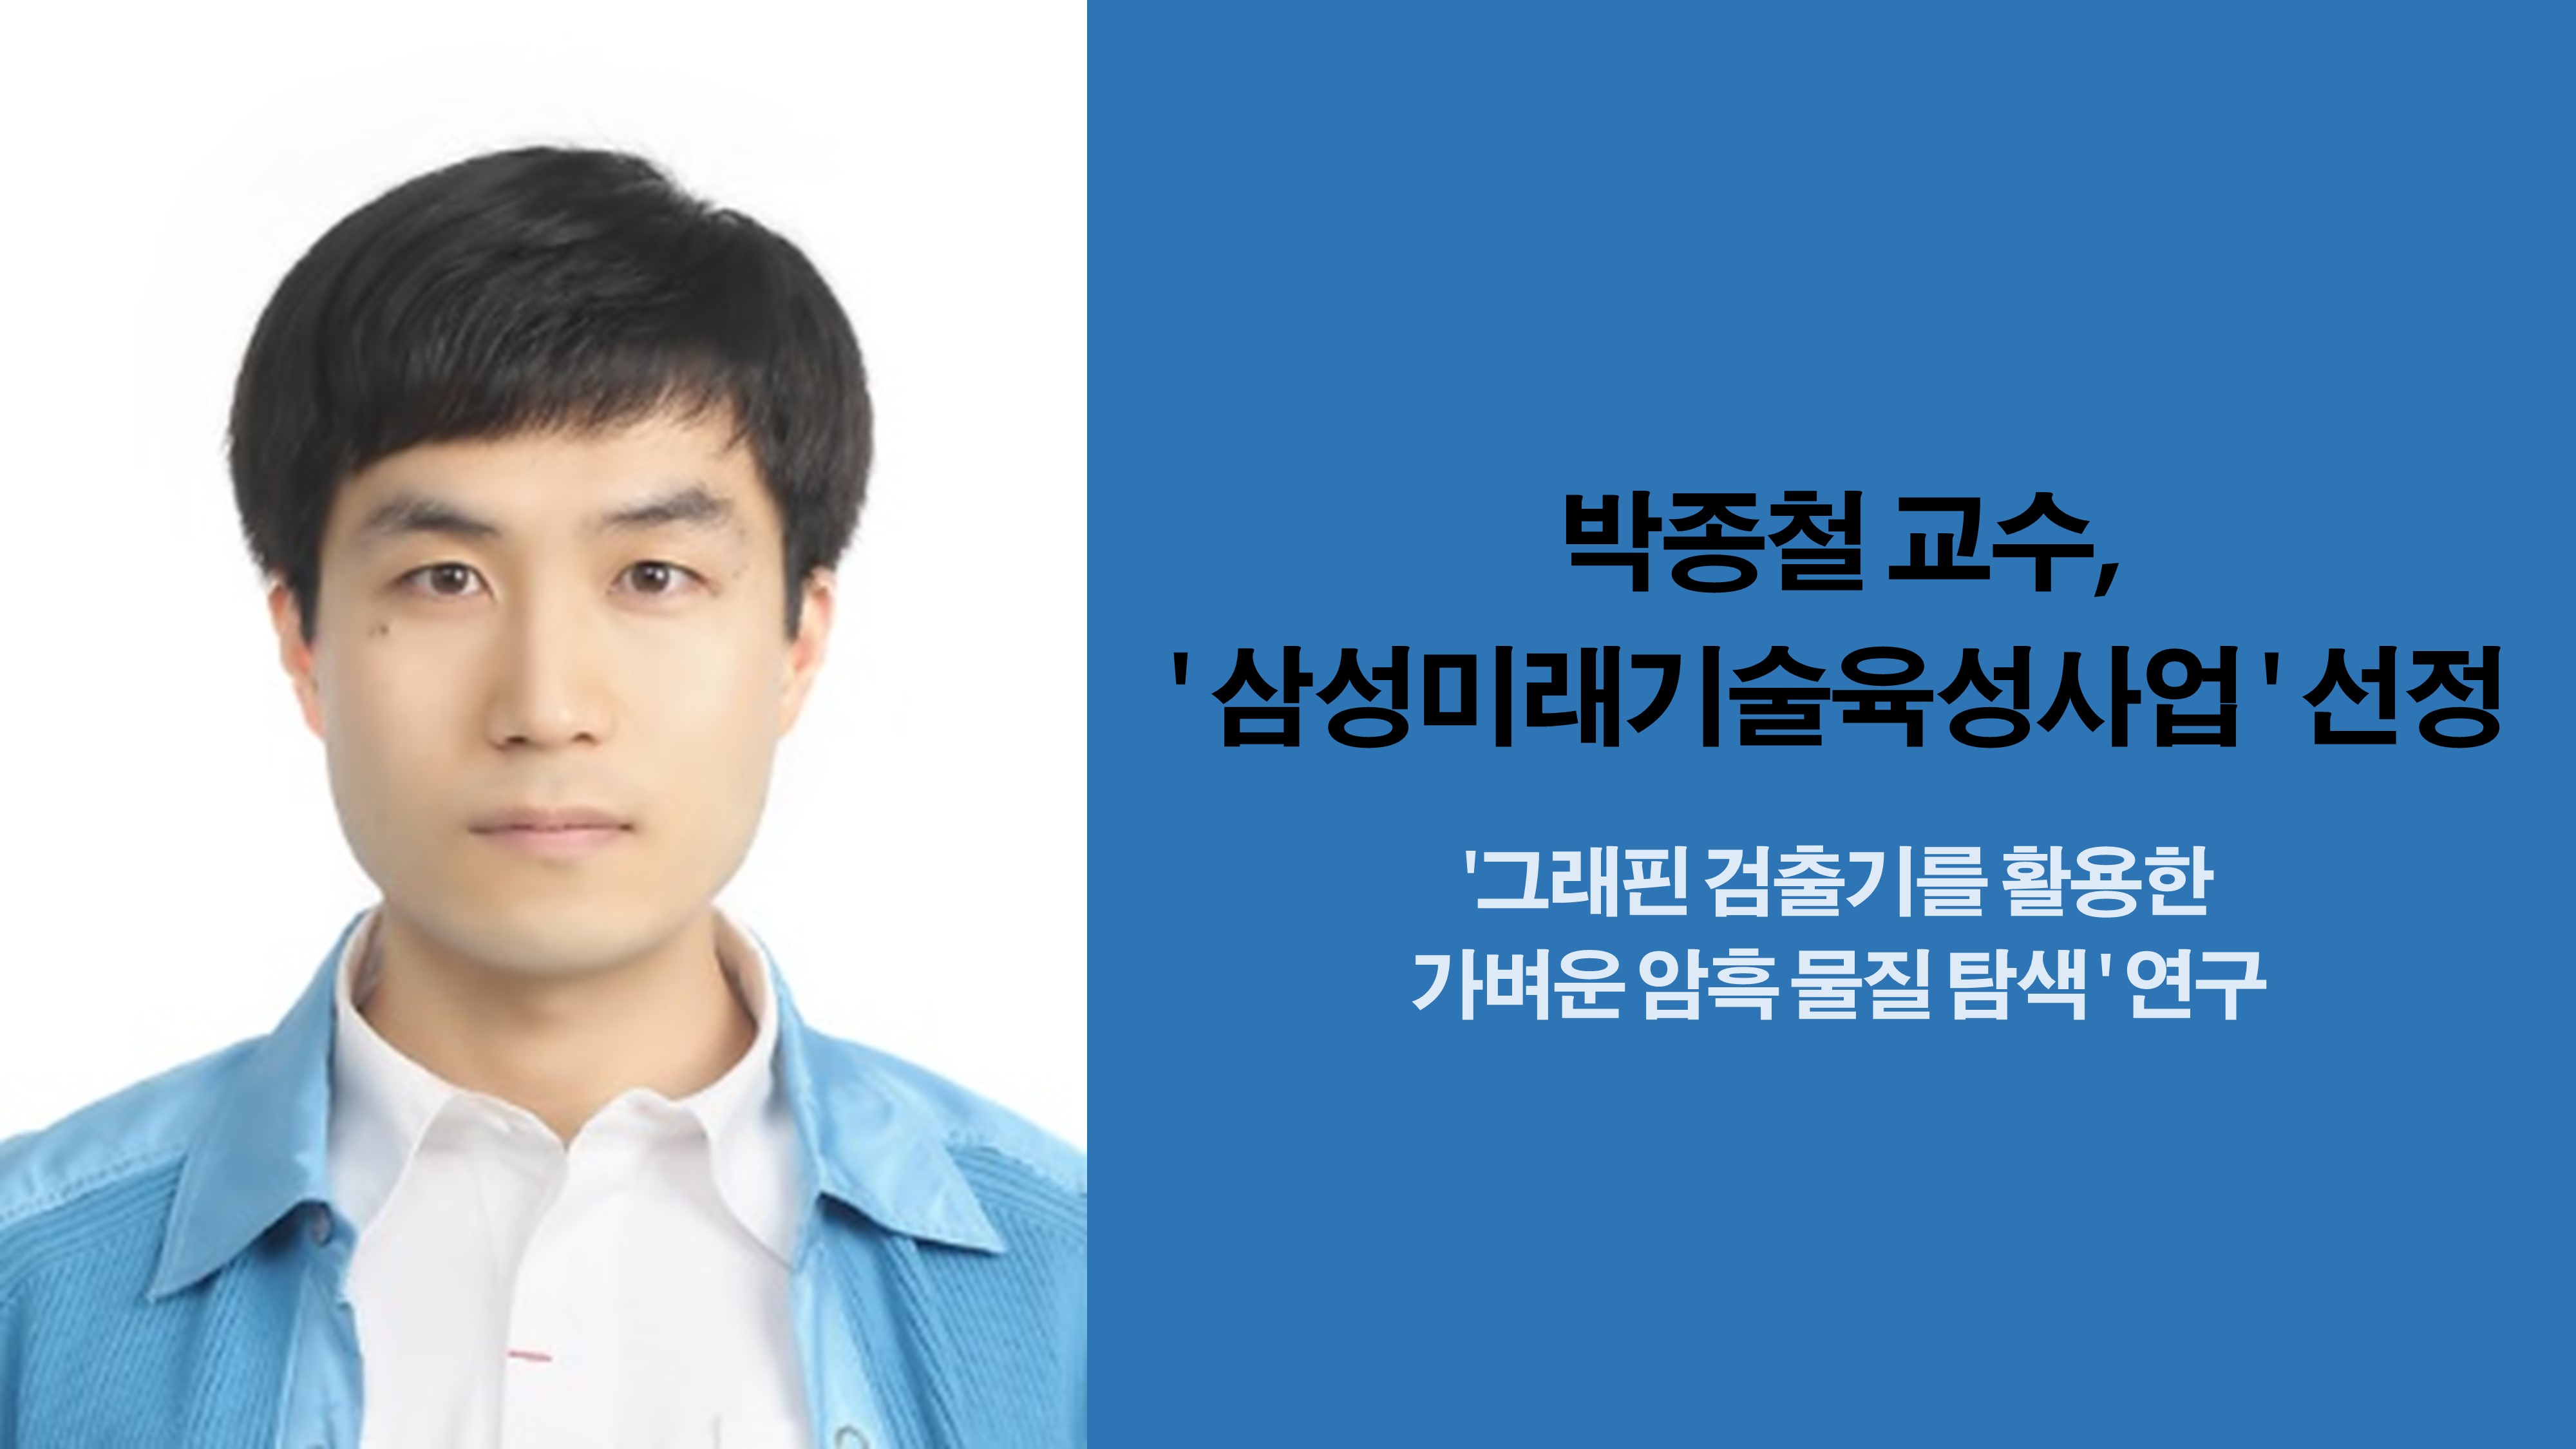 박종철 교수, ‘삼성미래기술육성사업’ 선정 사진1